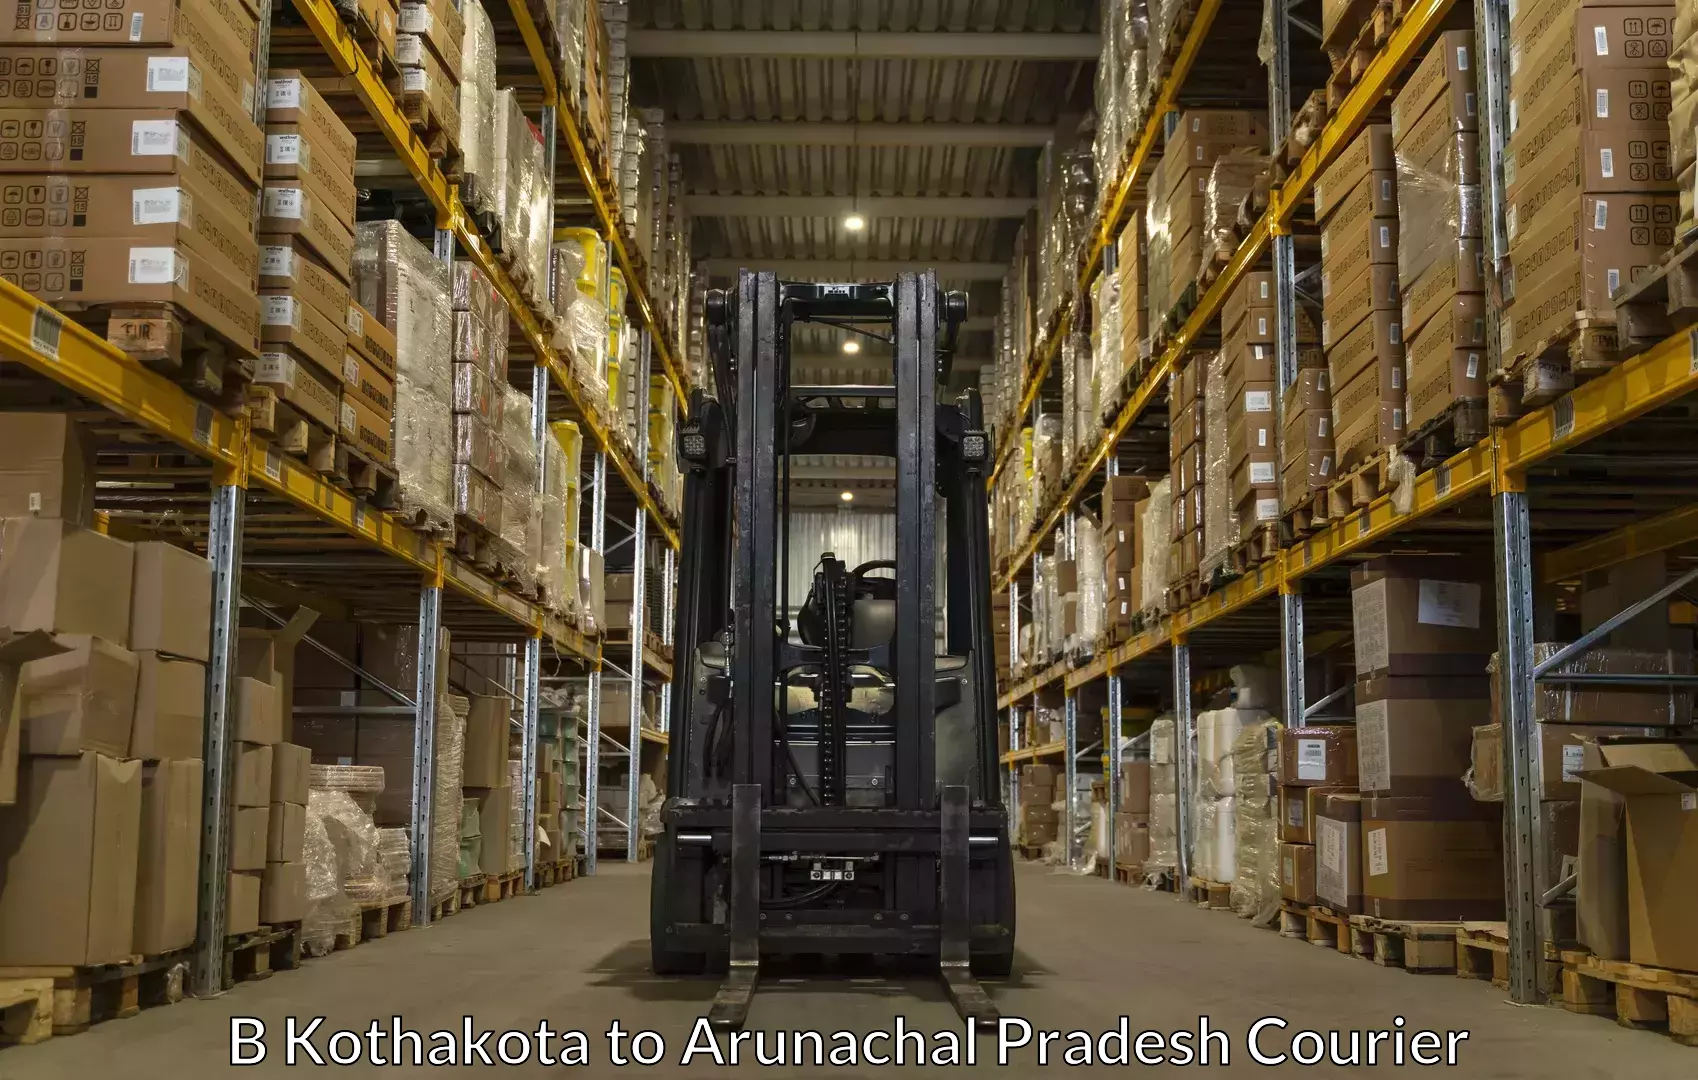 Furniture delivery service B Kothakota to Arunachal Pradesh